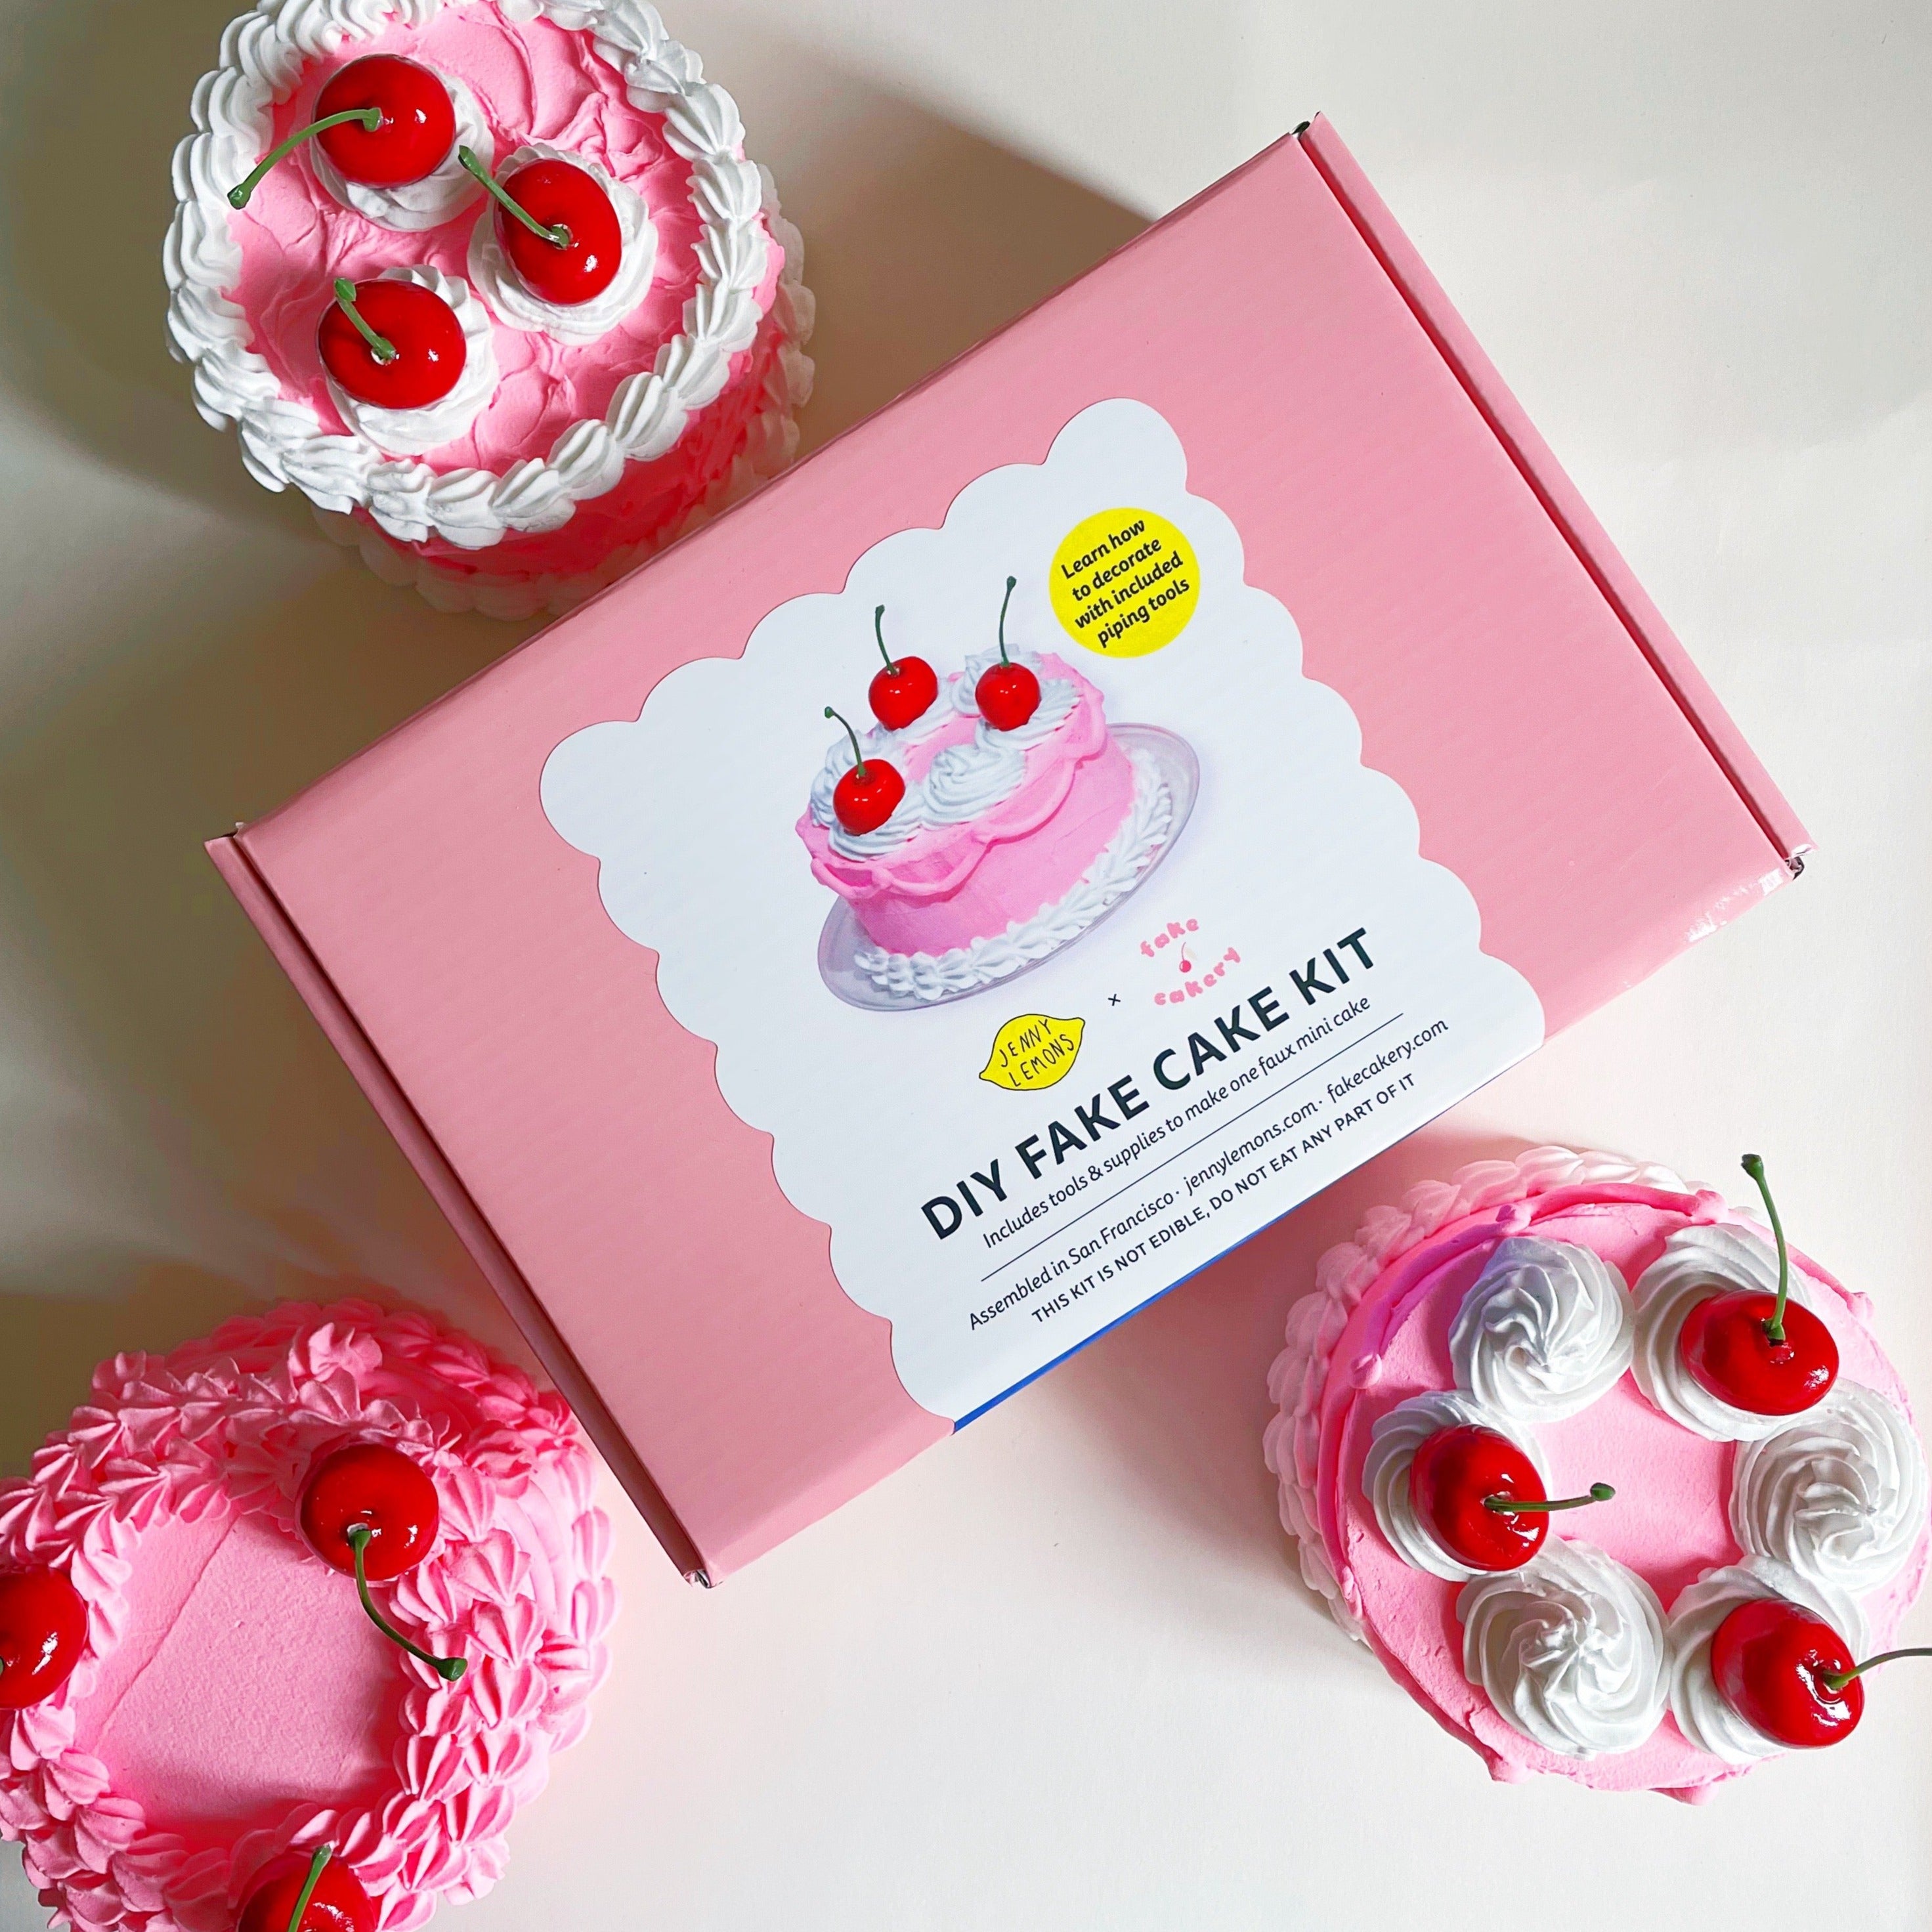 DIY Blue Cherry Fake Cake Kit – Leanna Lin's Wonderland